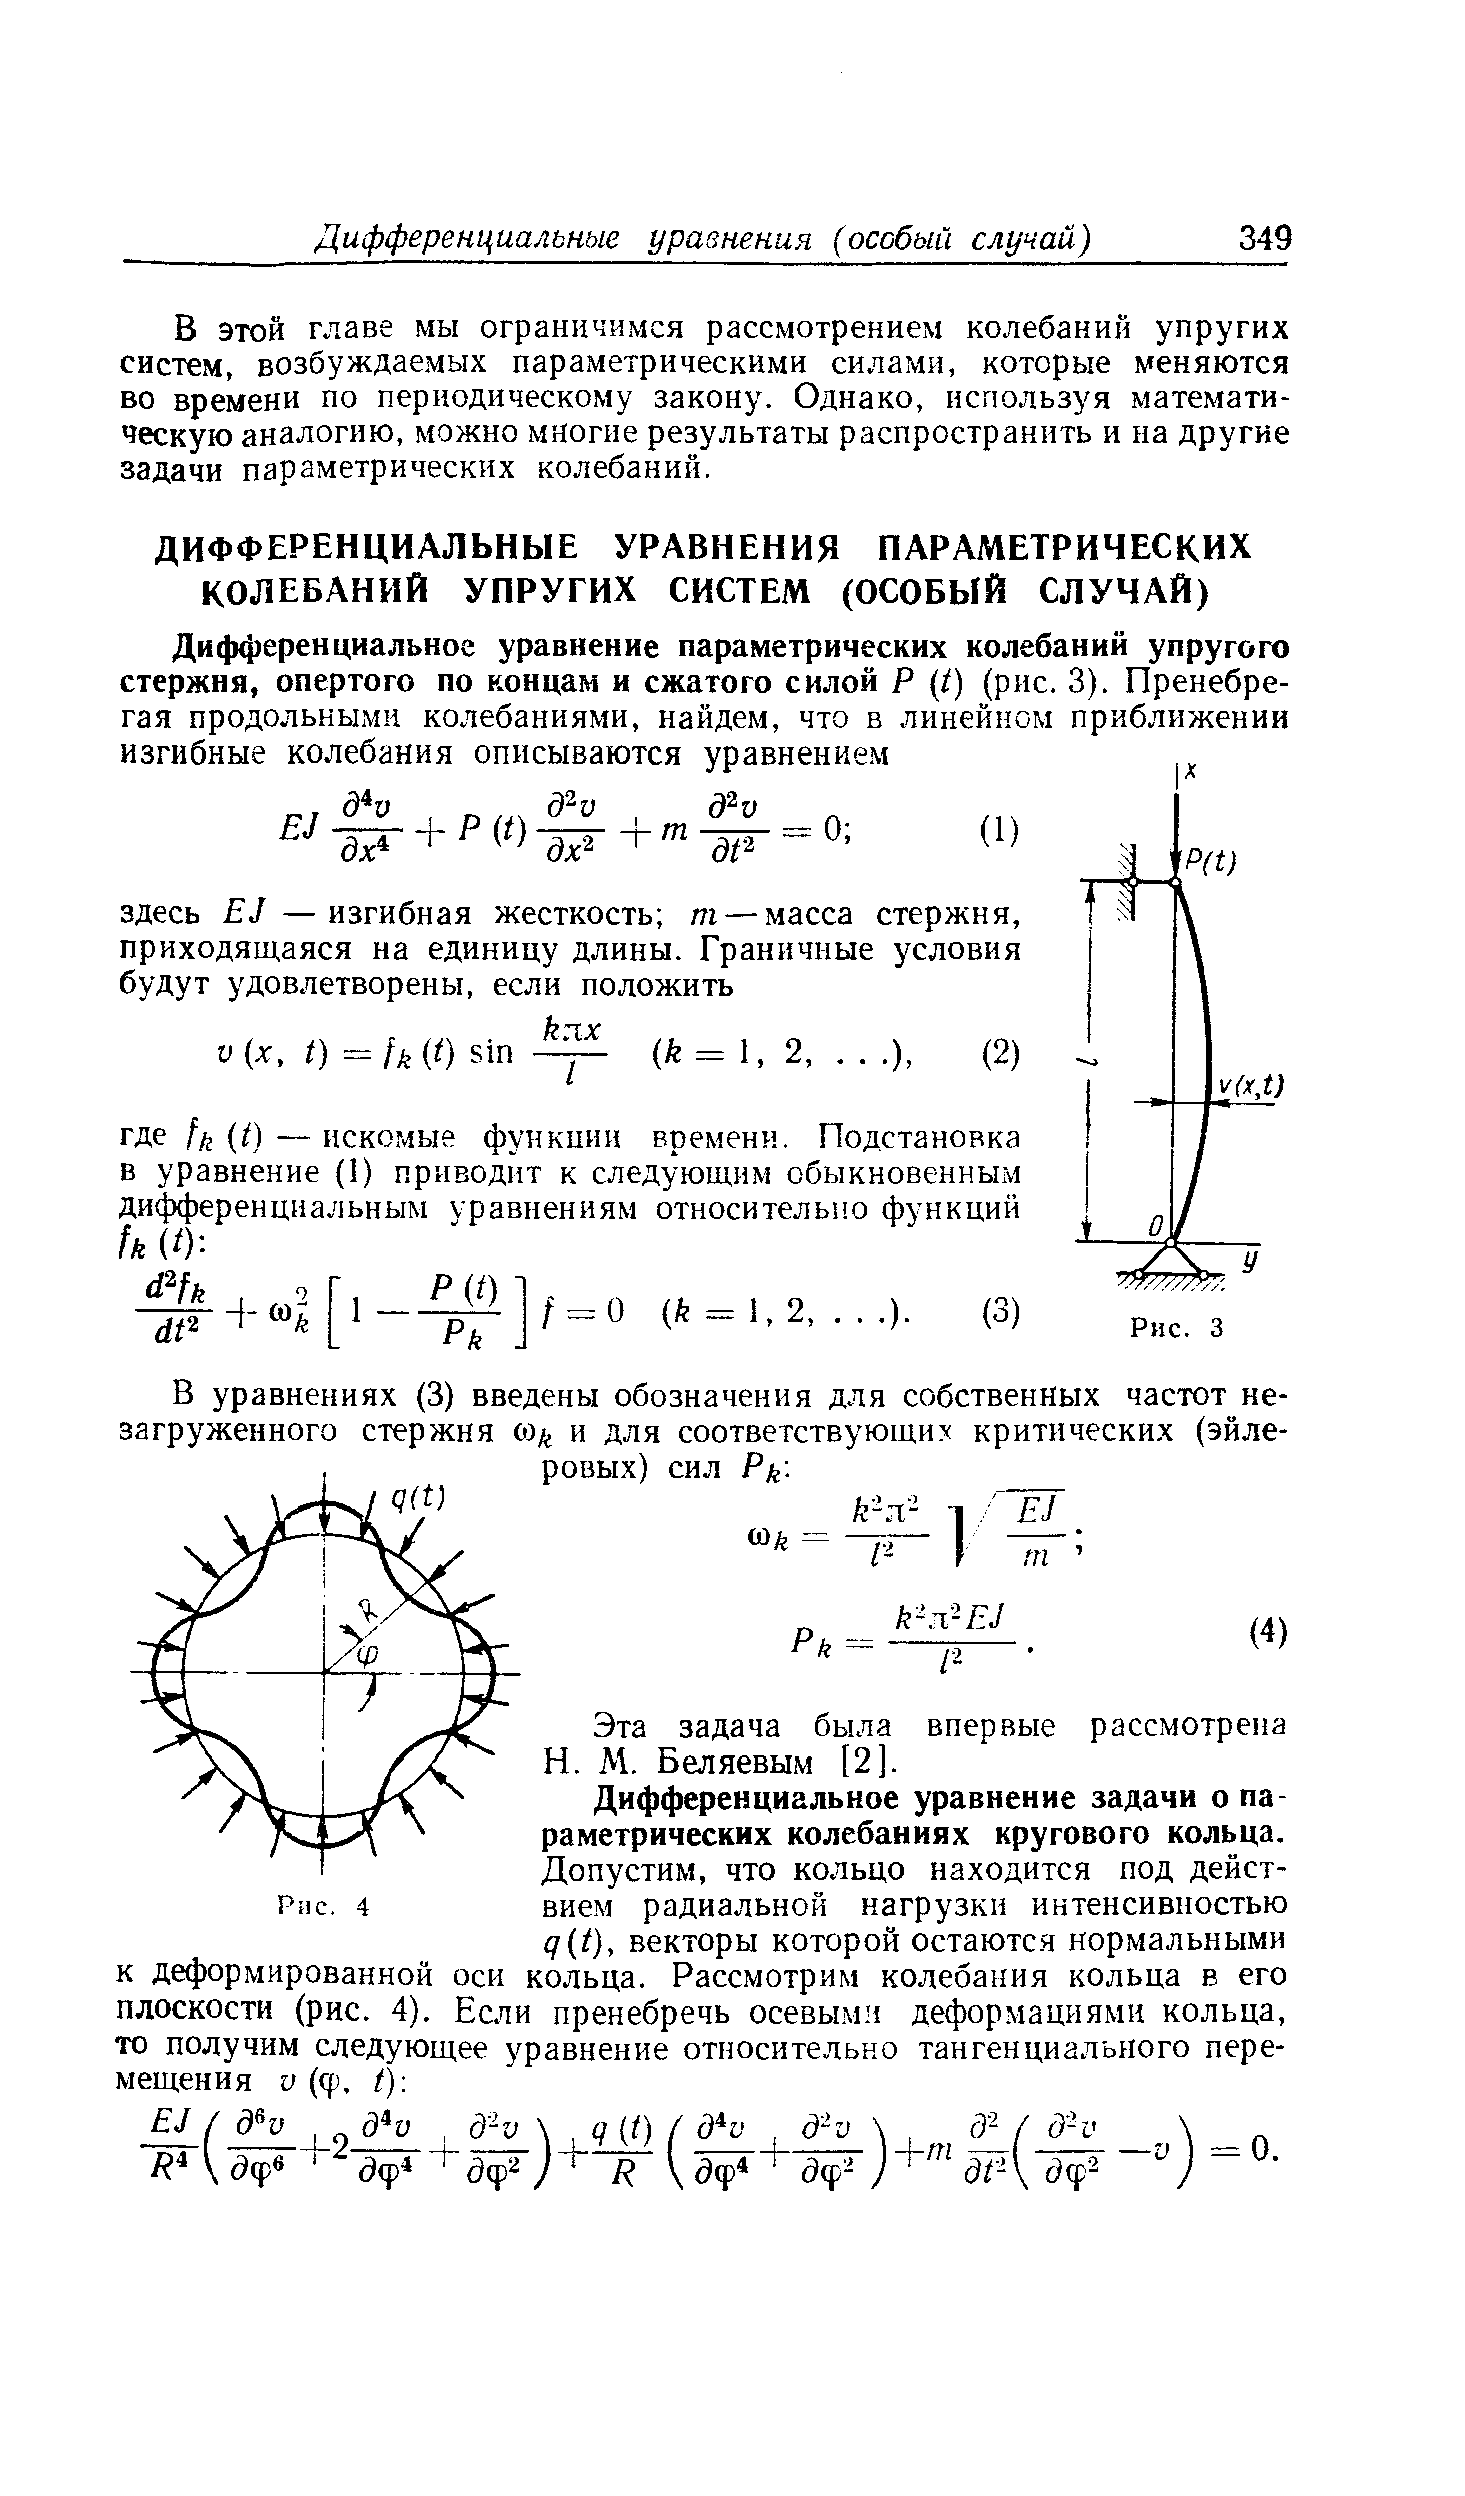 Дифференциальное уравнение задачи о па раметрических колебаниях кругового кольца.
